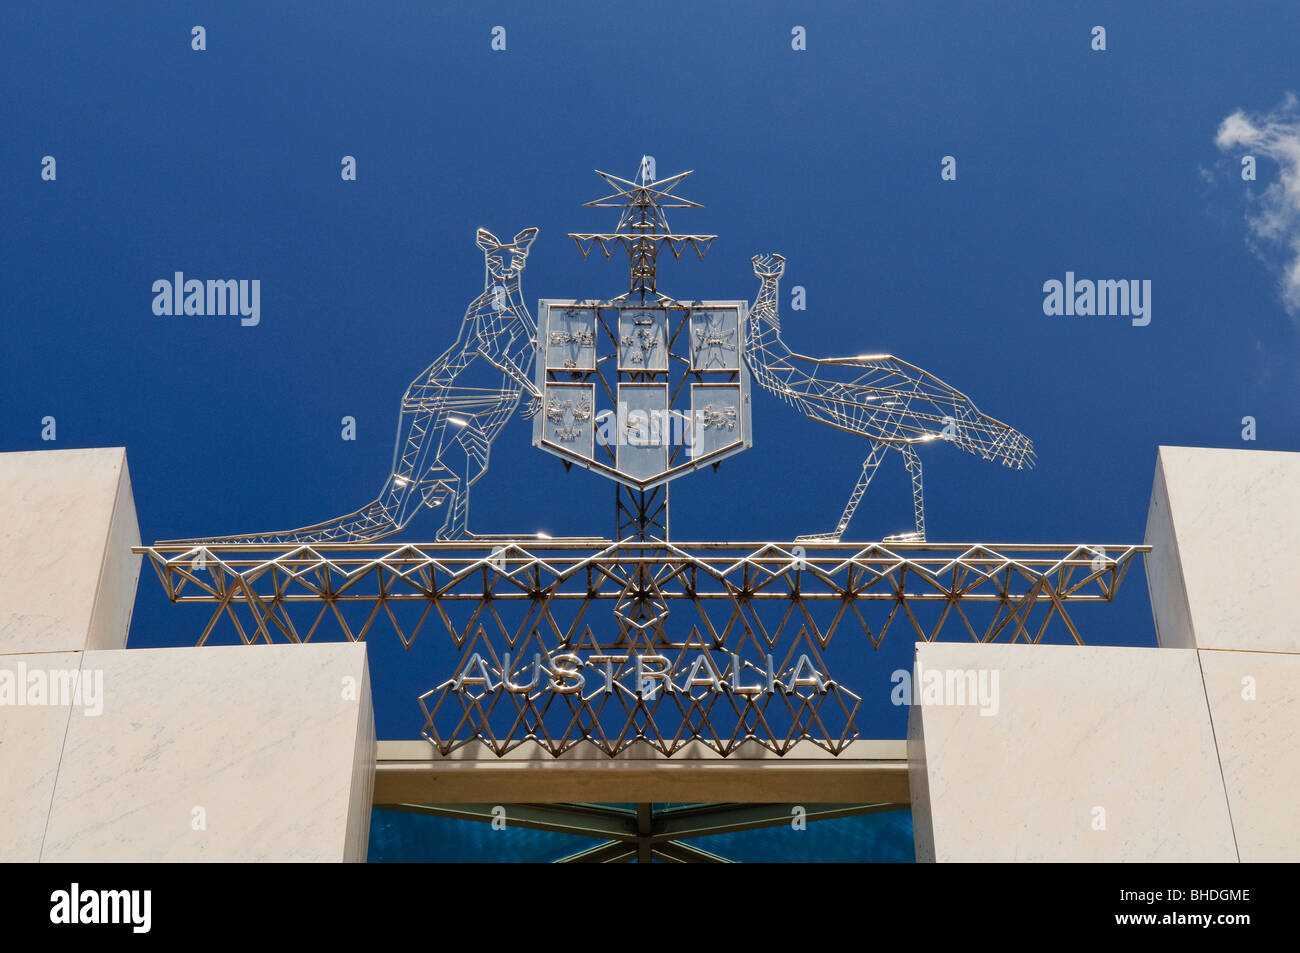 CANBERRA, Australien - Die australischen Wappen auf Parlament, Canberra. Das Emblem verfügt über ein Känguru und ein Emu und ein Schild. Das Parlament ist der Treffpunkt des Parlaments von Australien. Es ist in Canberra, der Hauptstadt Australiens. Es wurde am 9. Mai 1988 von Königin Elisabeth II., Königin von Australien.[1] Seine für den Bau wurden über $ 1,1 Mrd. eröffnet. Zum Zeitpunkt der Konstruktion Es war das teuerste Gebäude in der südlichen Hemisphäre. Vor 1988, das Parlament von Australien met in der vorläufigen Parlament, das jetzt als "alten Parlament Ho bekannt Stockfoto